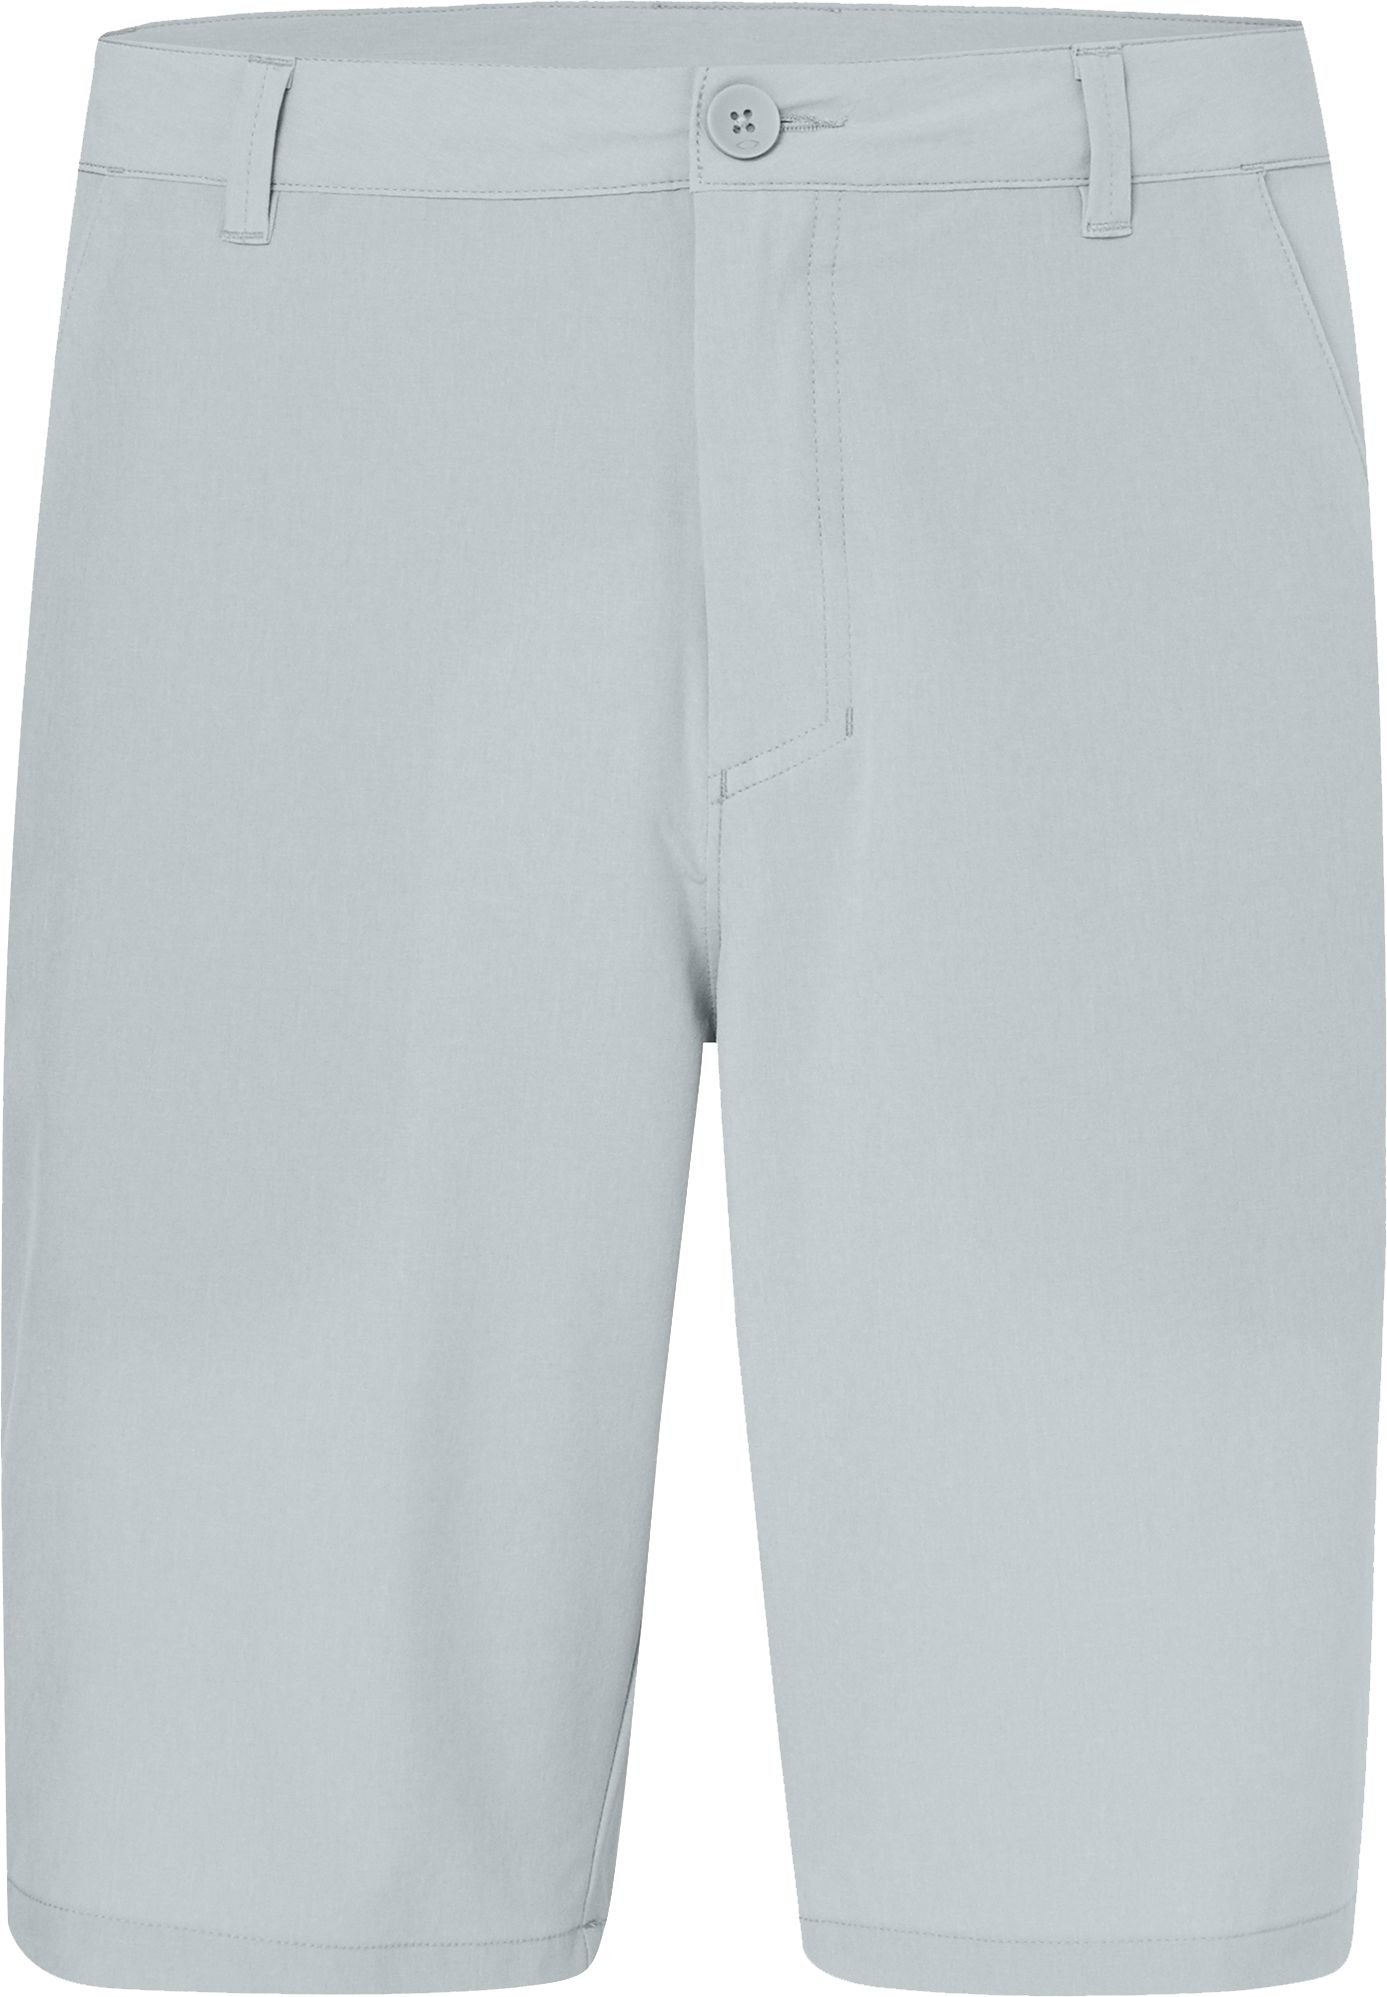 oakley golf shorts clearance